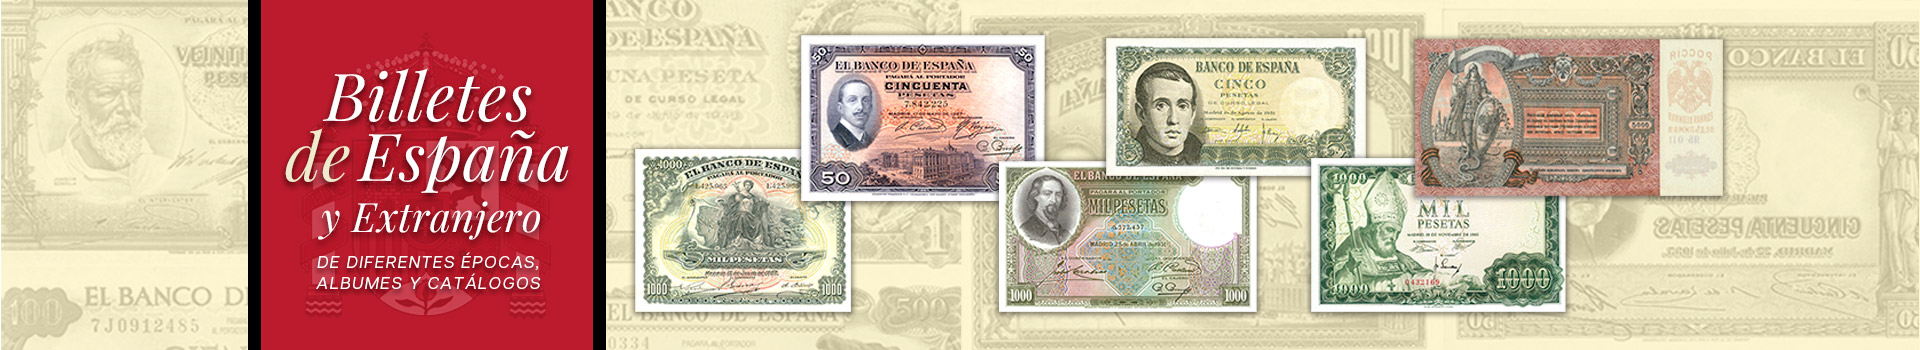 Billetes de España Lamas Bolaño